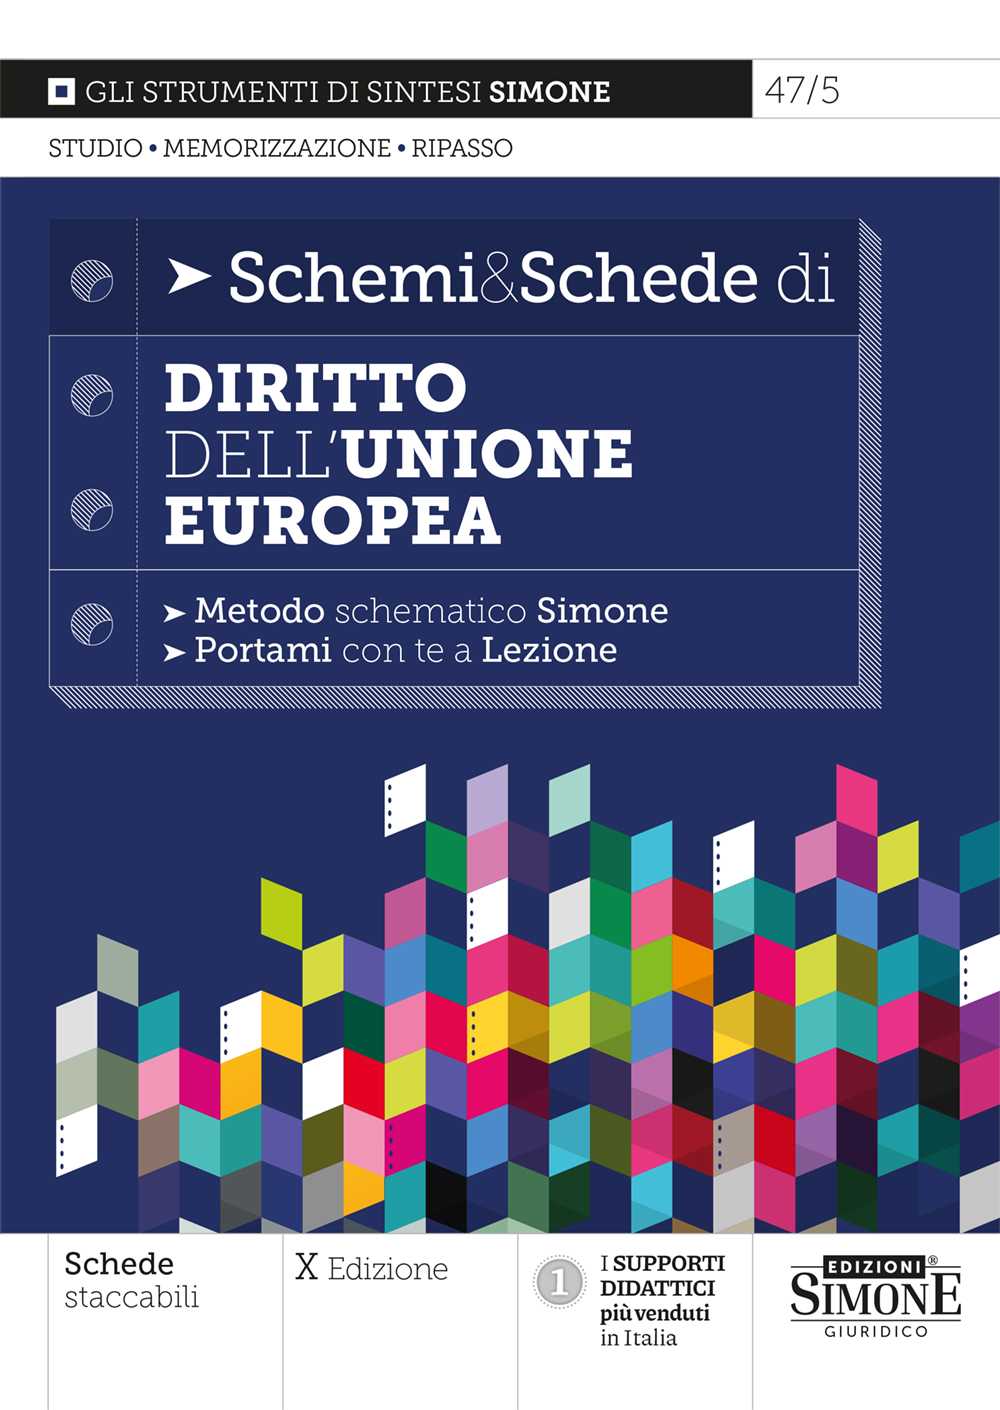 Schemi & Schede di Diritto dell'Unione europea - 47/5